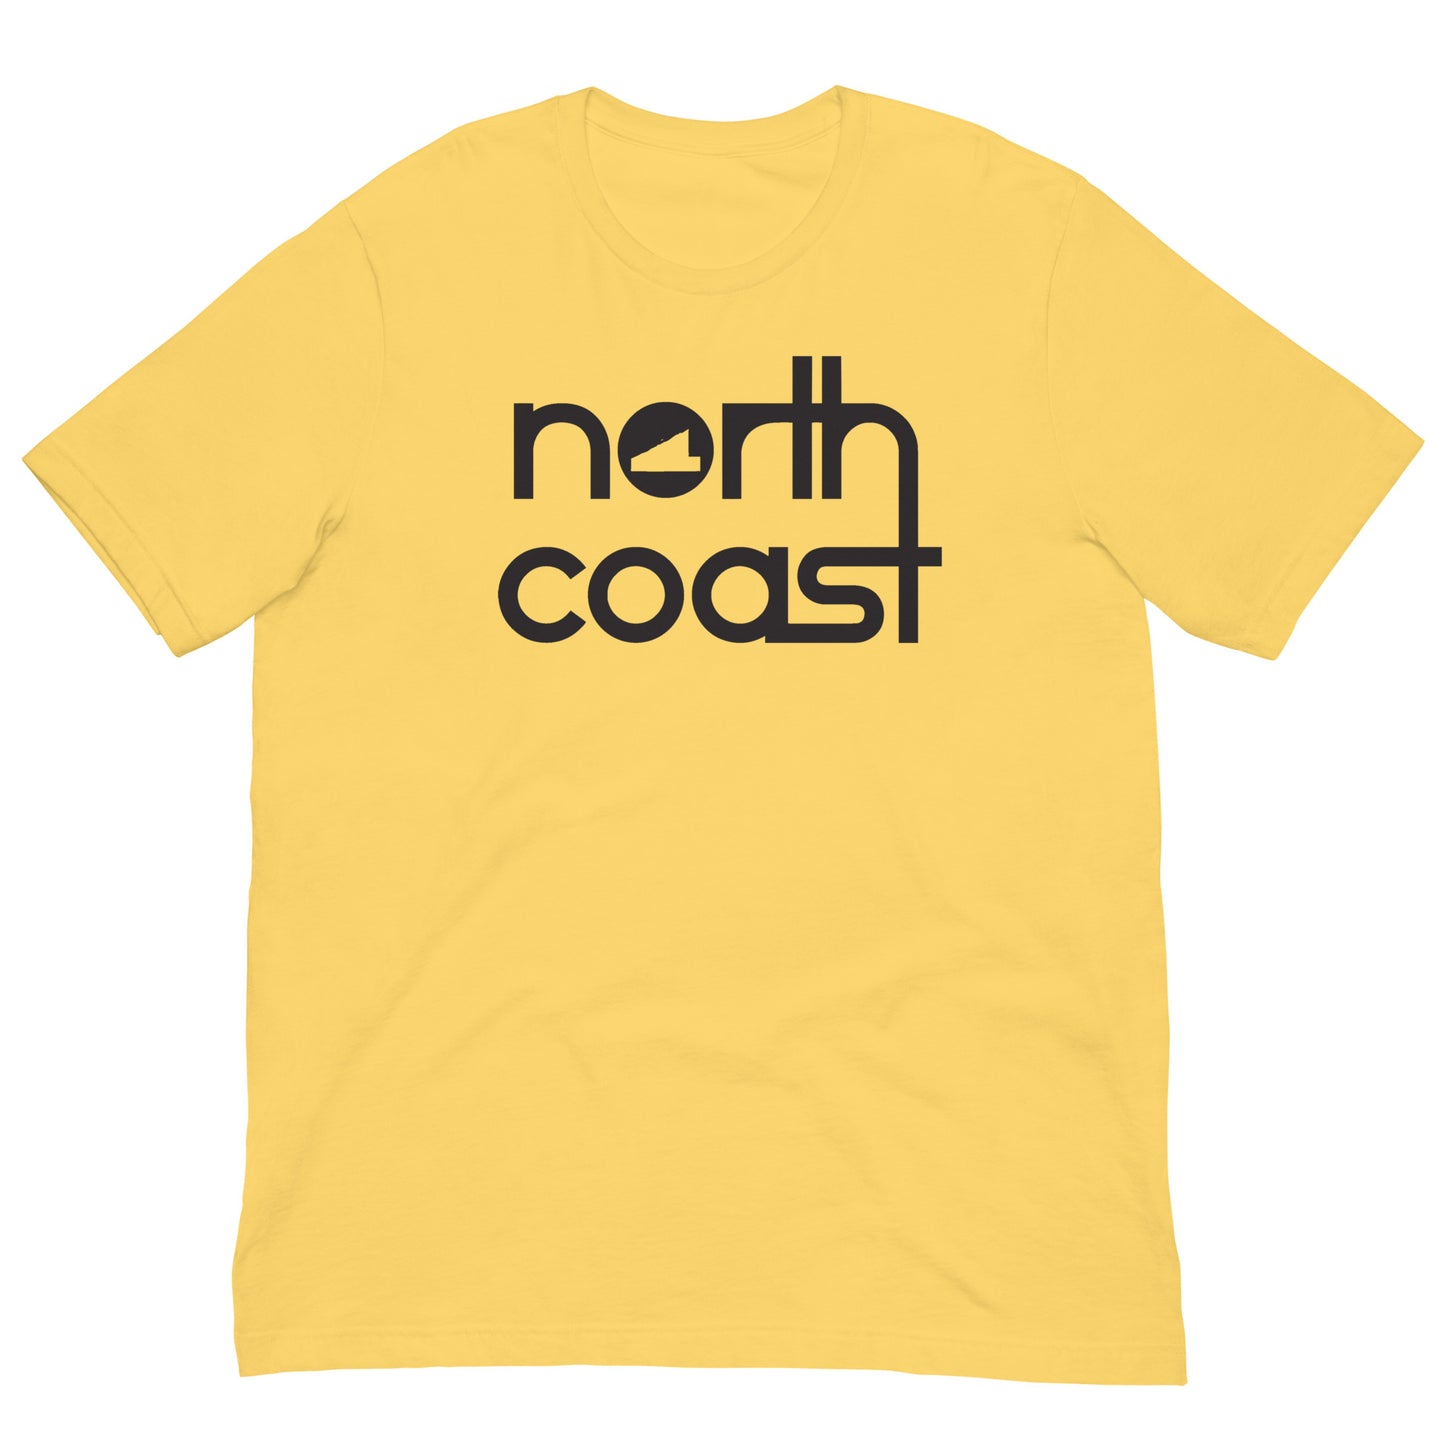 North Coast Unisex Tee (Black Print)